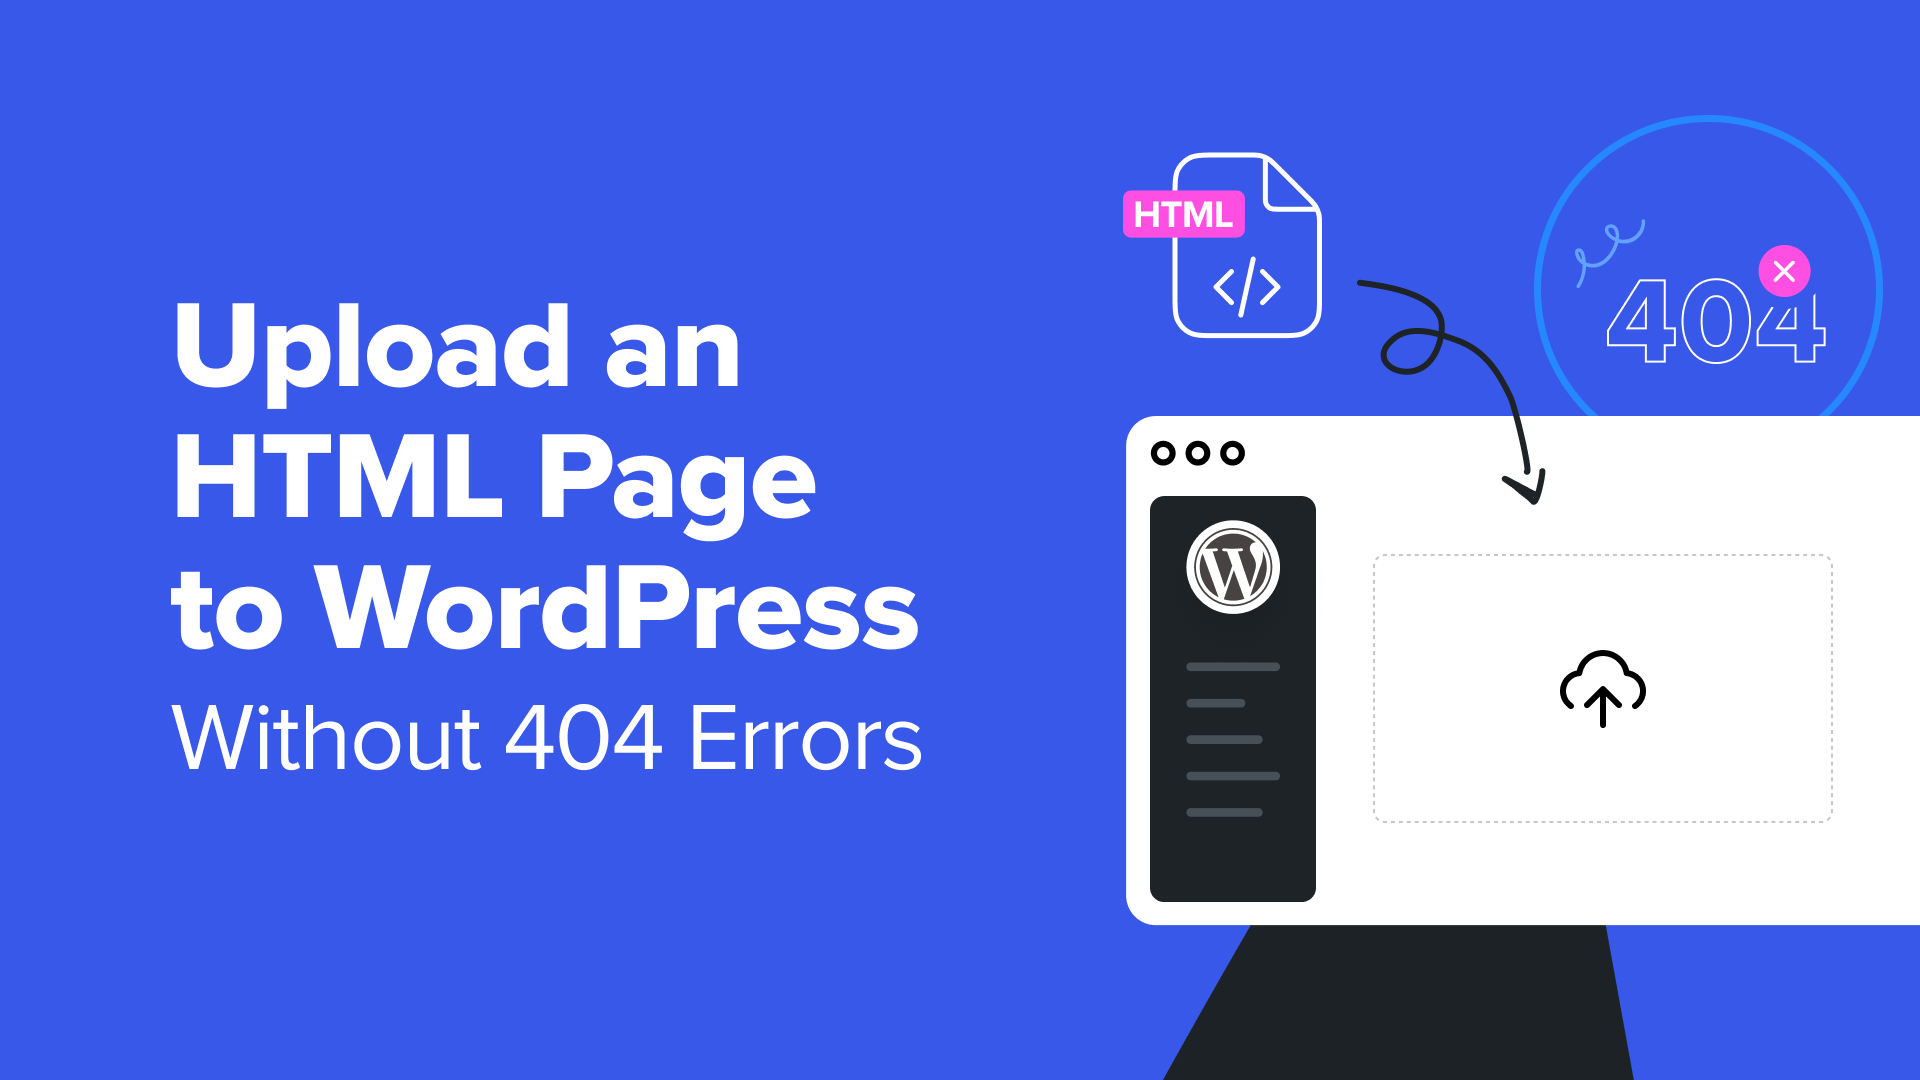 Come caricare una pagina HTML su WordPress senza errori 404